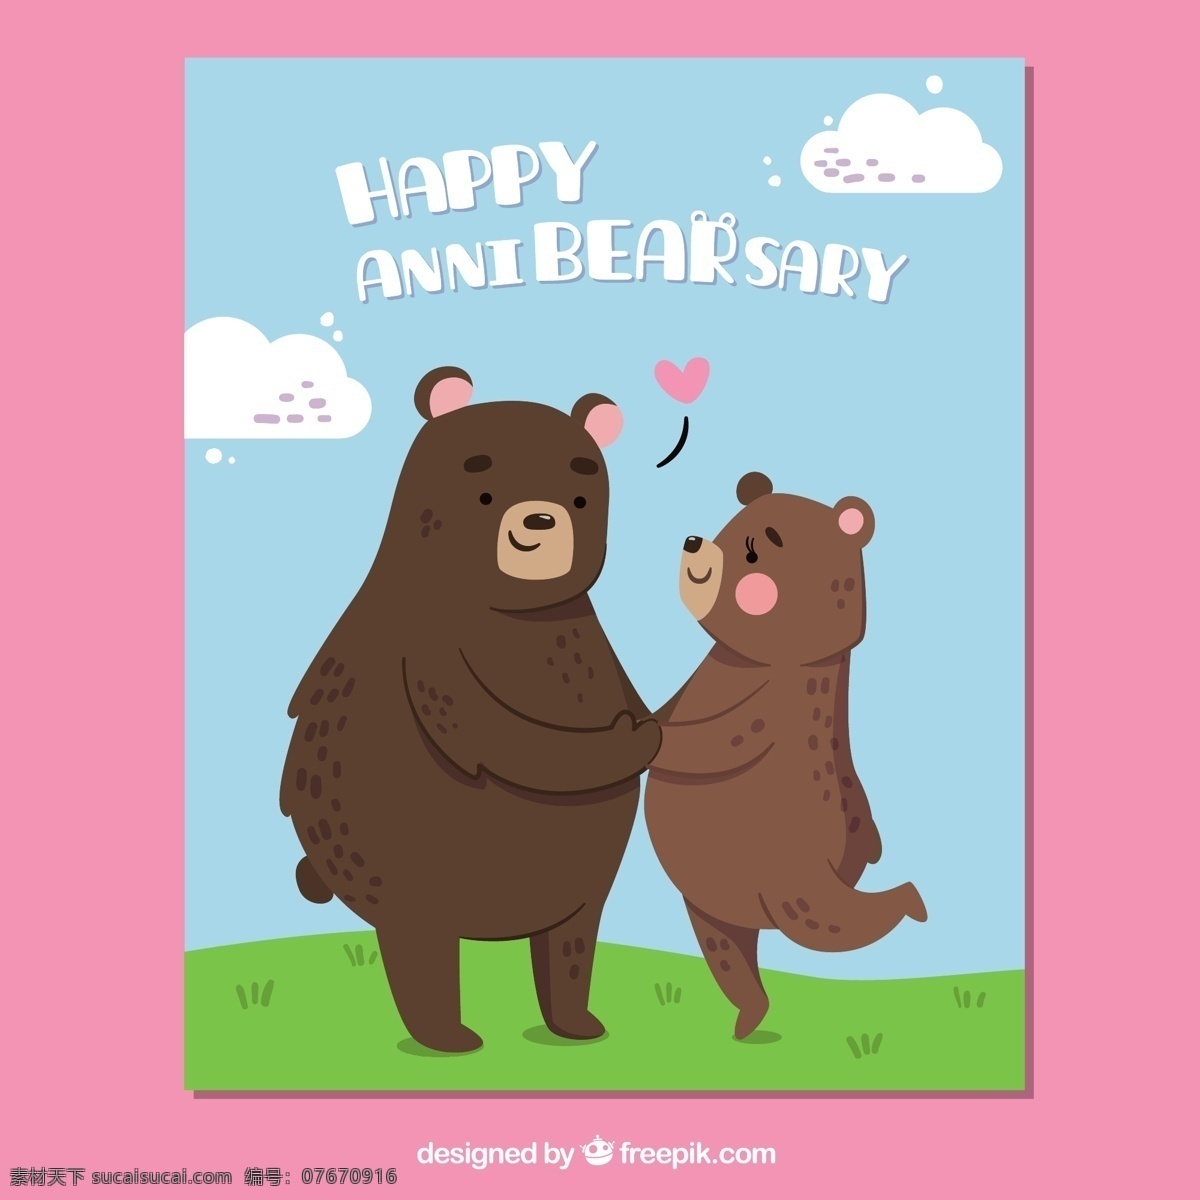 可爱 周年 纪念卡 结婚 爱情 卡片 卡通 快乐 熊 结婚纪念卡 结婚纪念日 夫妻 心 恋爱 粉色